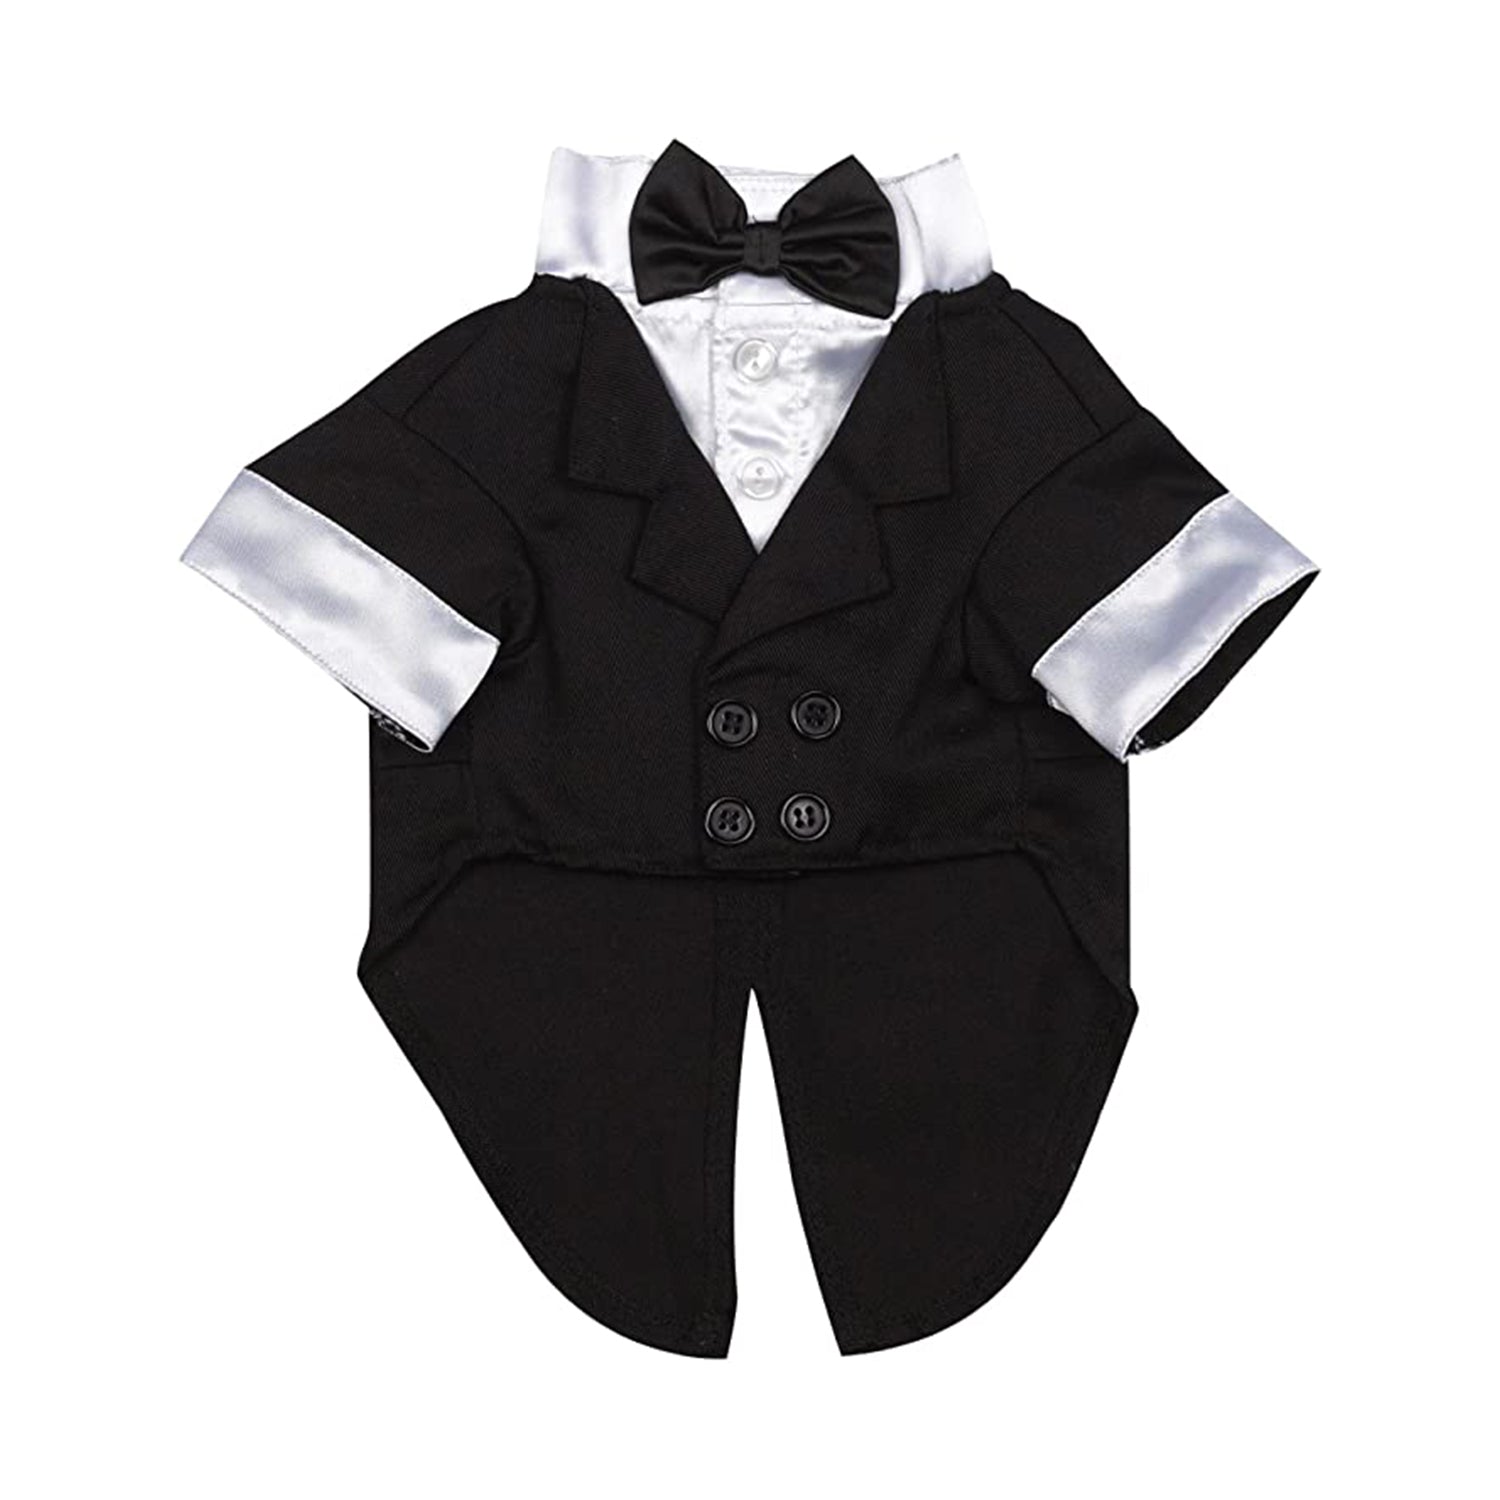 East Side Tuxedo Groom Costume